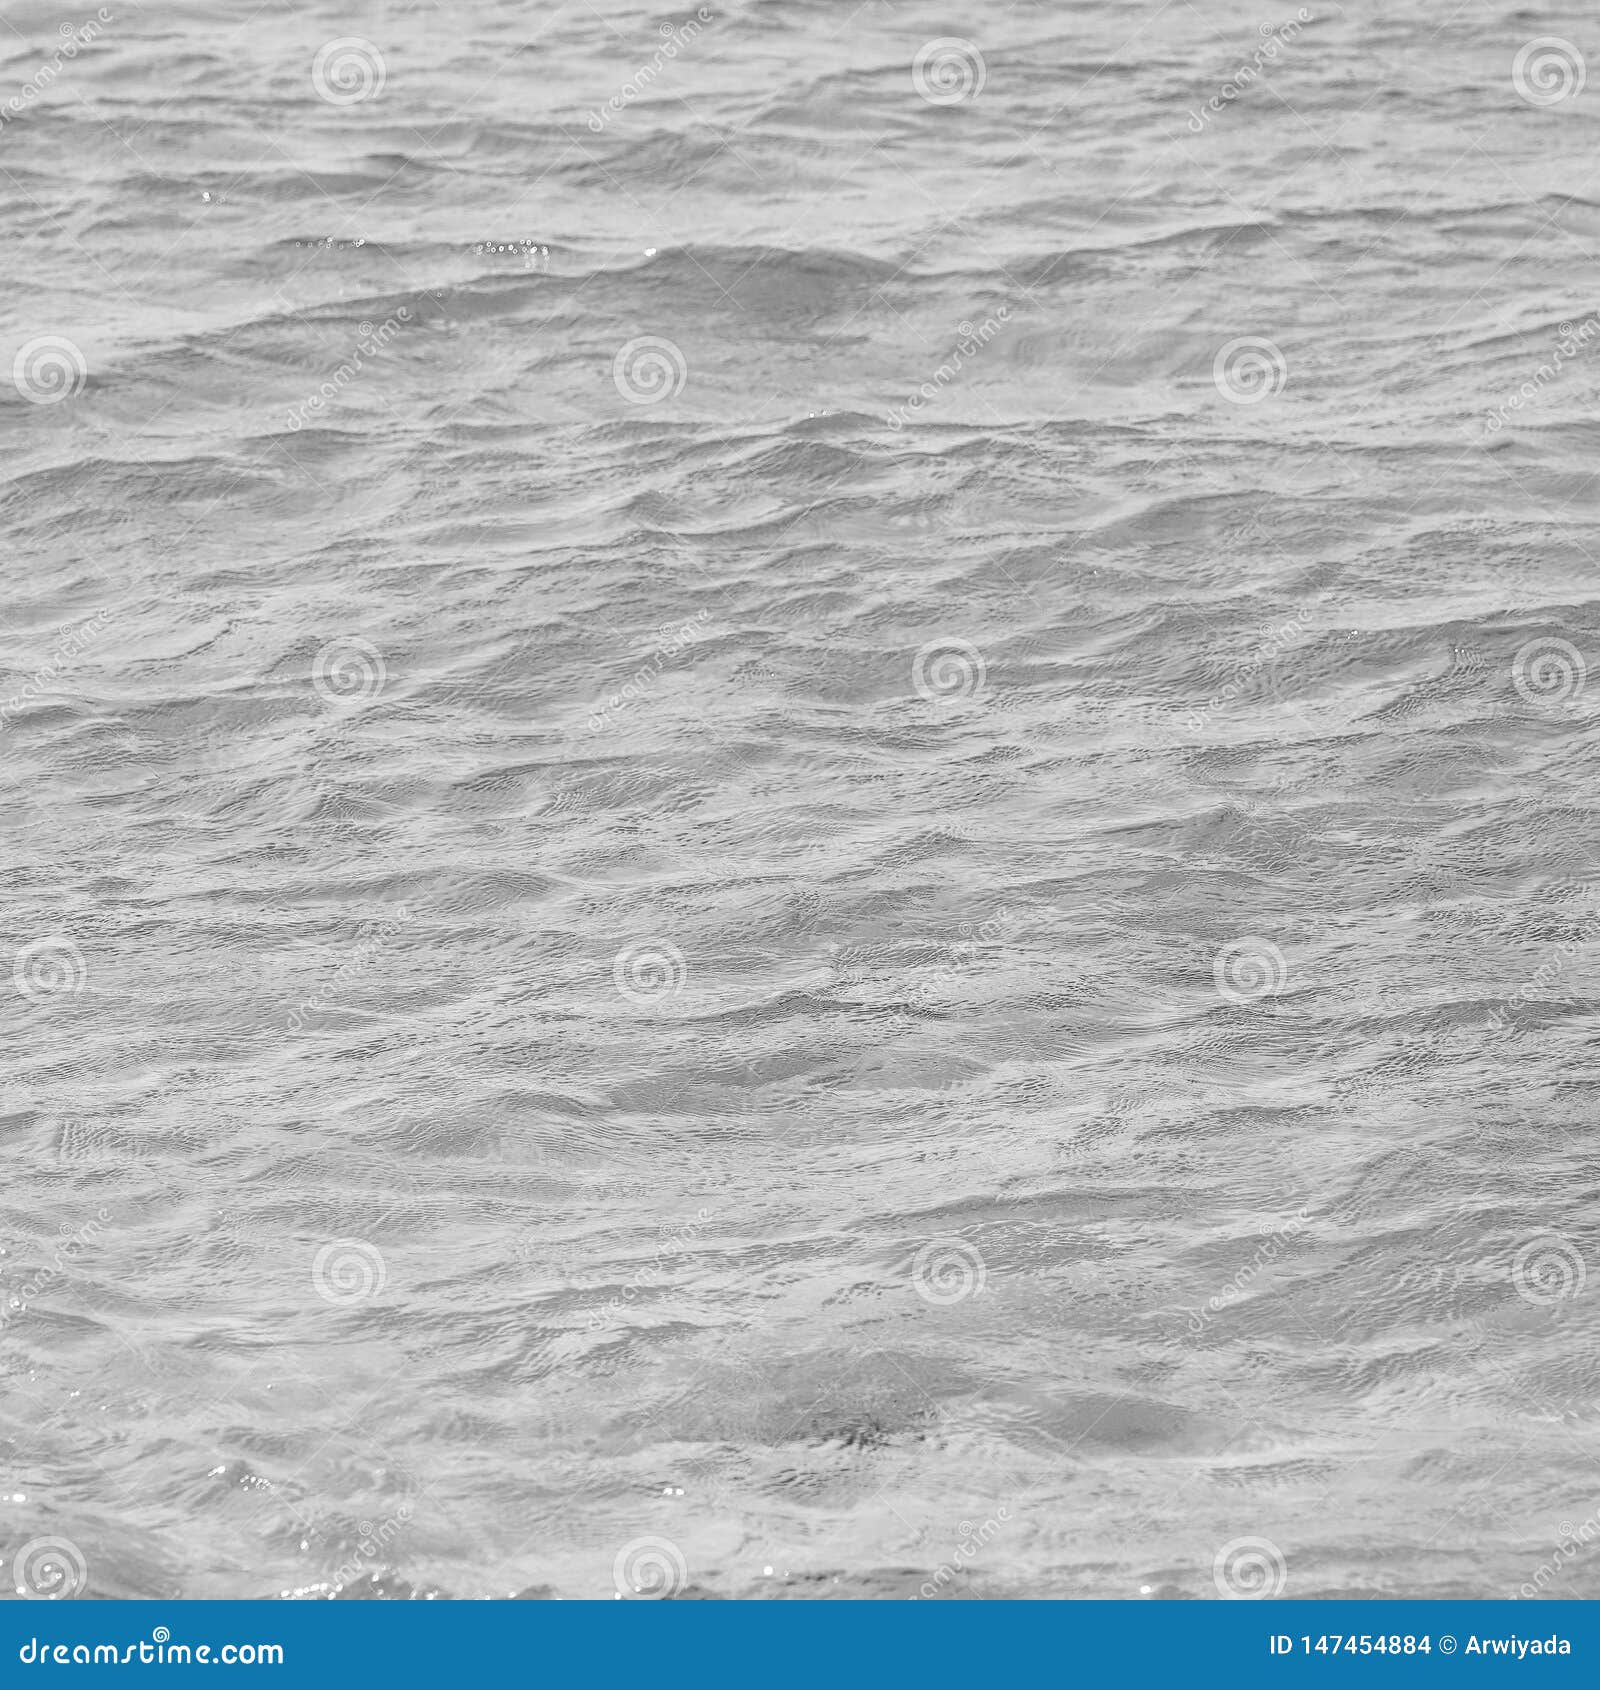 Eficacia reputación alias Aguamarina Azul Y Fondo De La Agua De Mar Blanco Foto de archivo - Imagen  de transparente, océano: 147454884